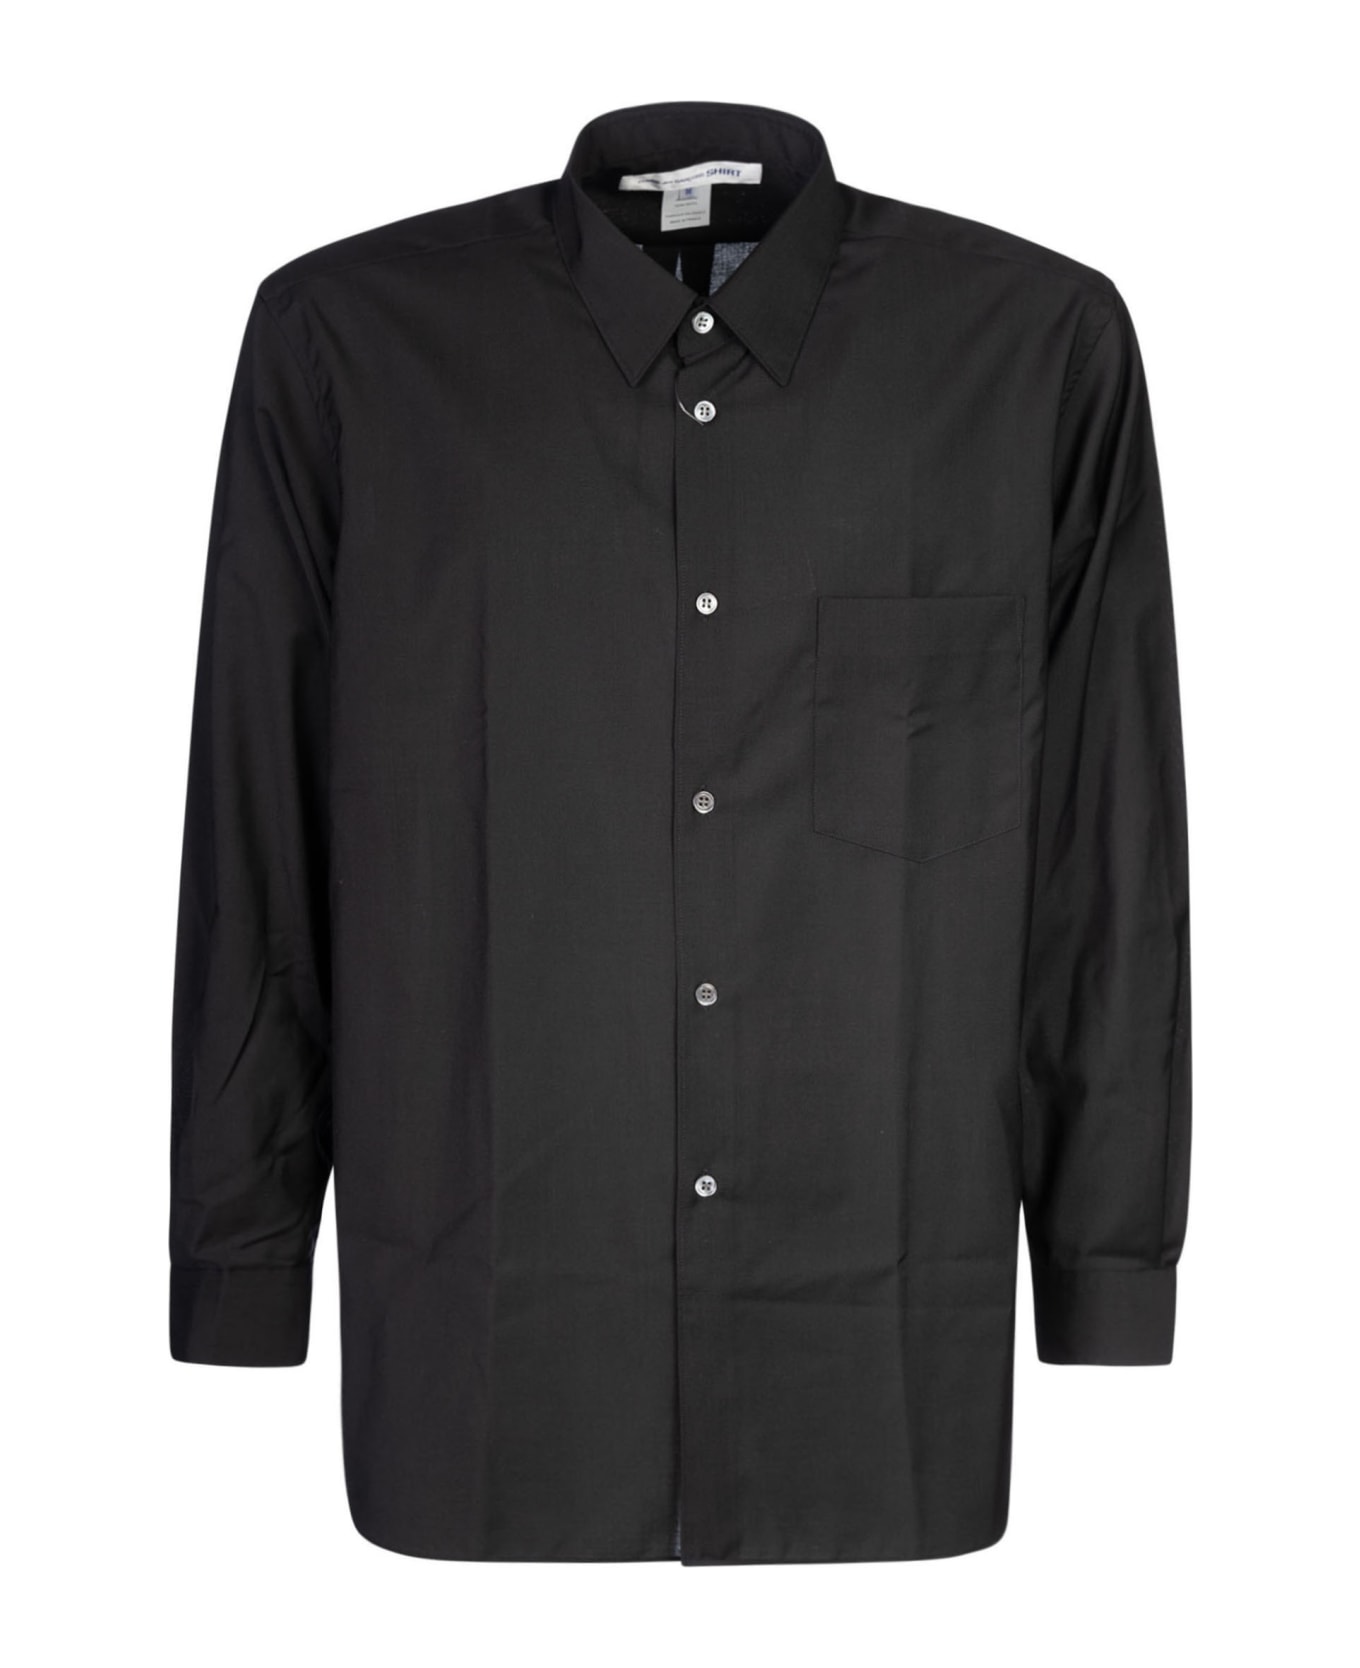 Comme des Garçons Shirt Boy Patched Pocket Plain Shirt - Black